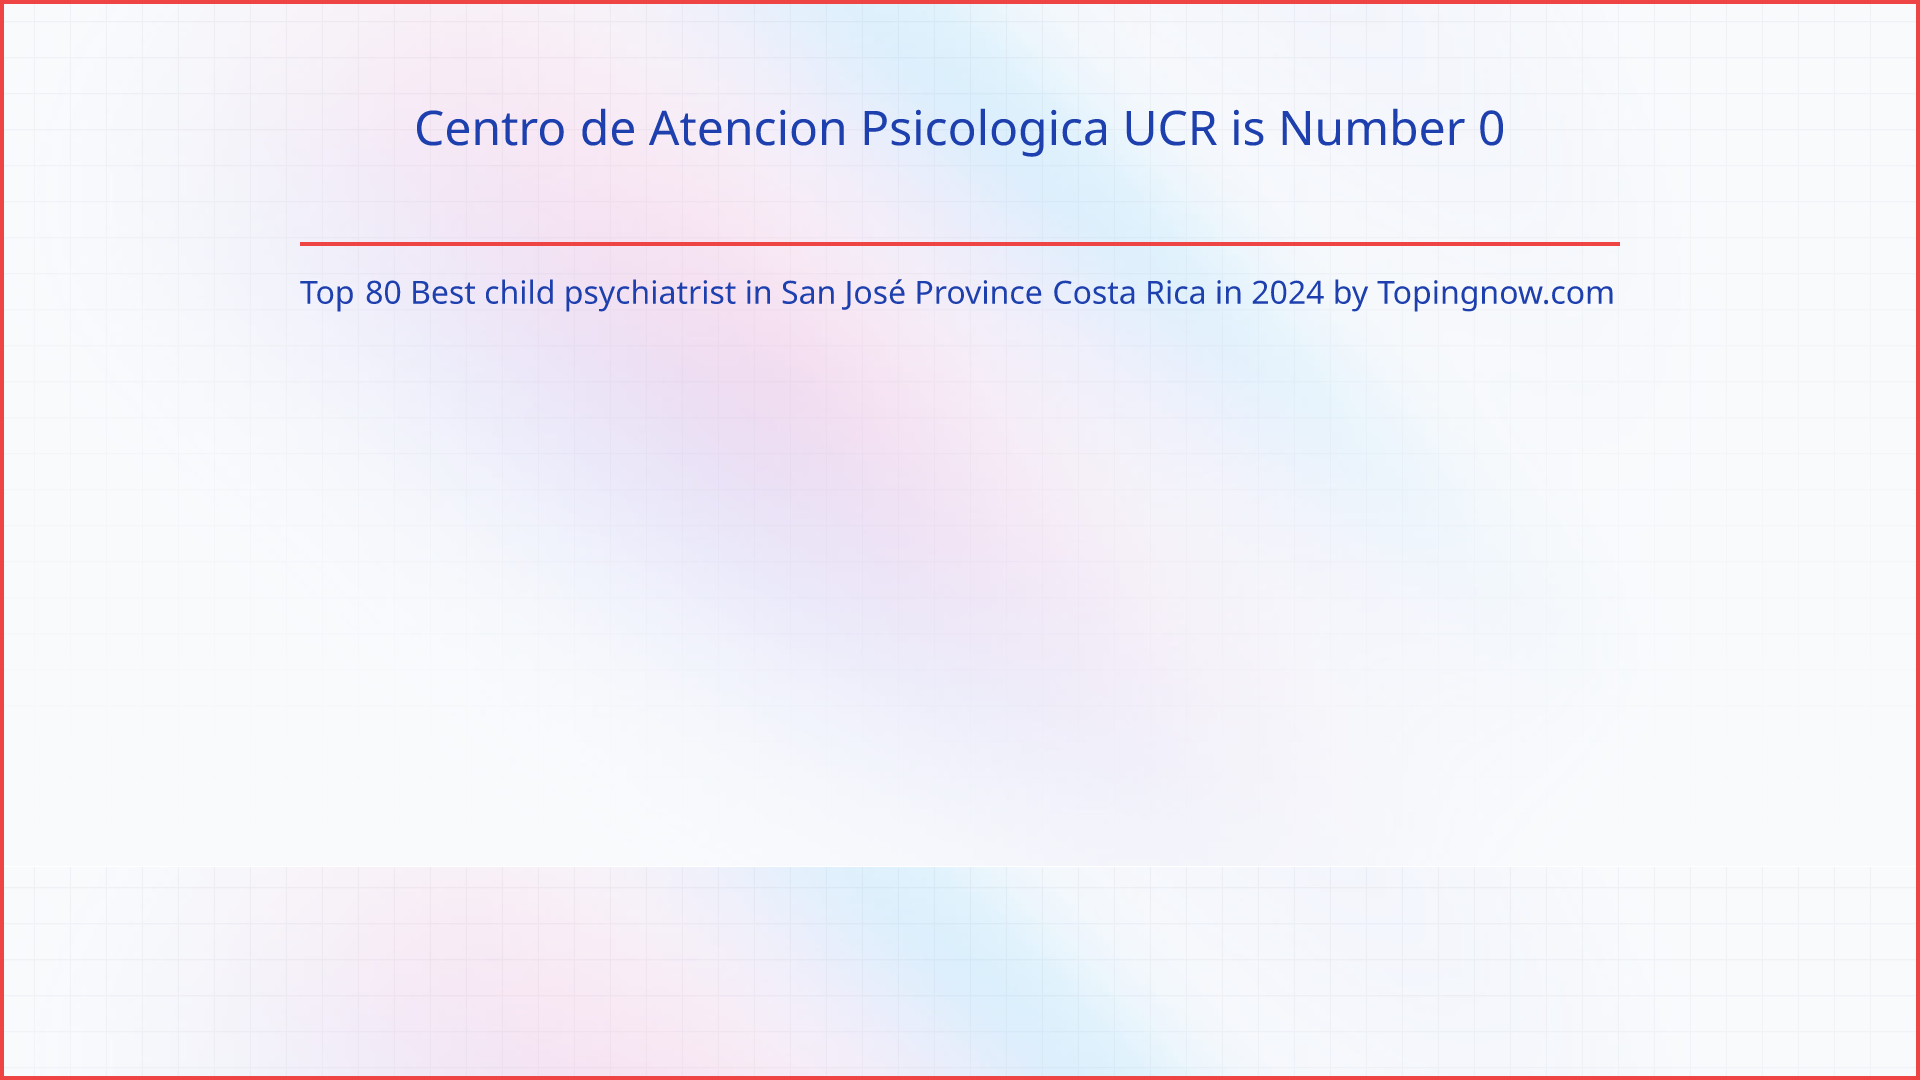 Centro de Atencion Psicologica UCR: Top 80 Best child psychiatrist in San José Province Costa Rica in 2024